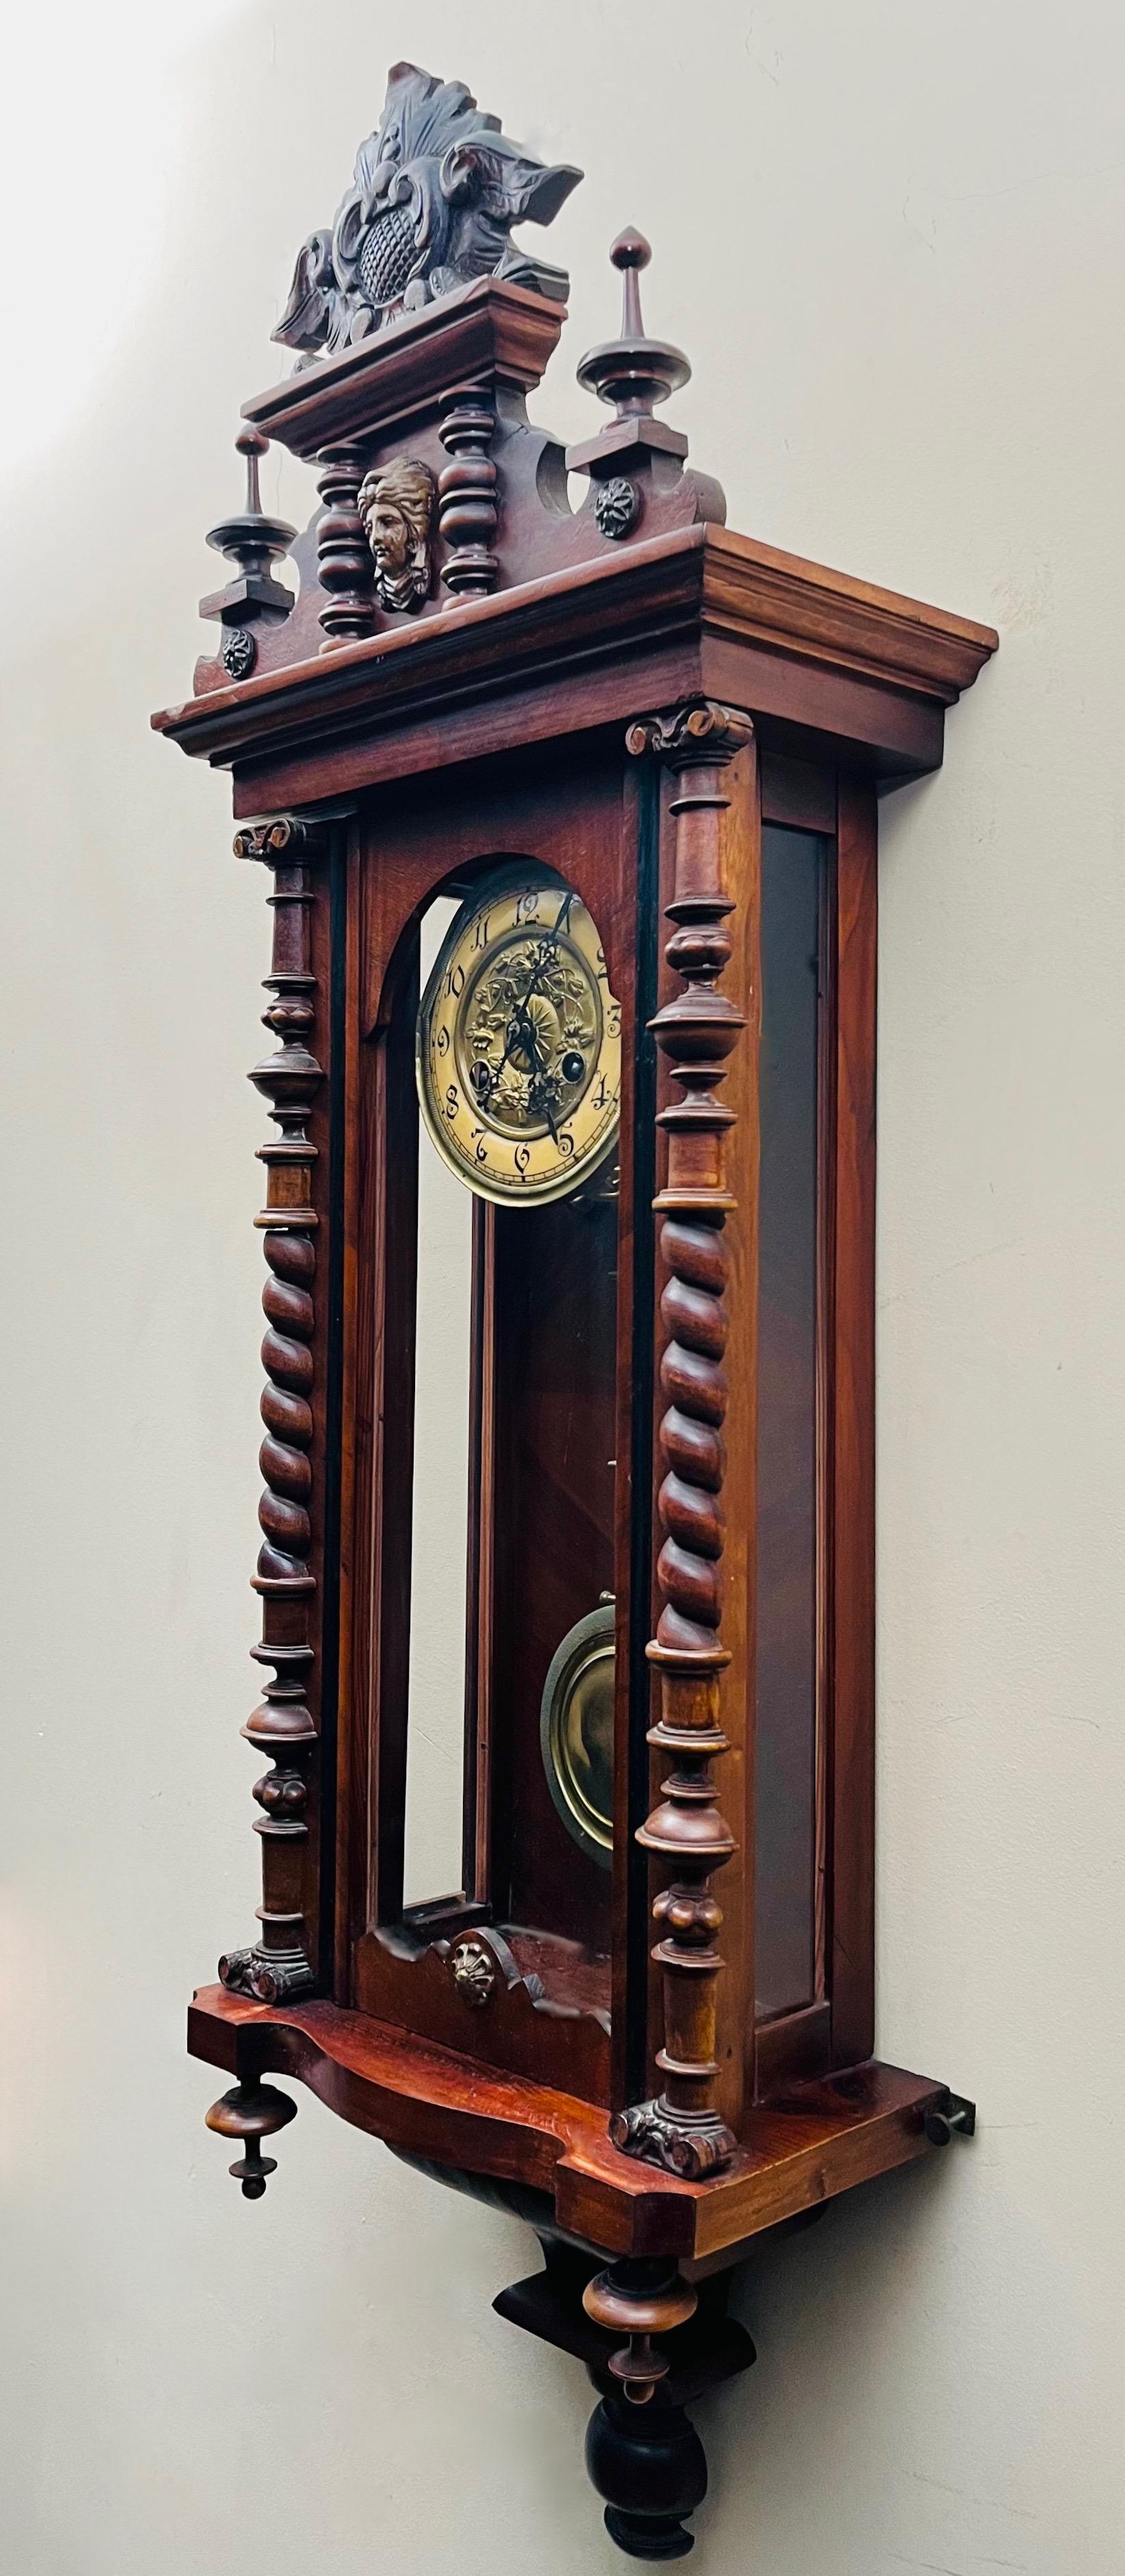 Dekoracyjny zegar ścienny szafkowy